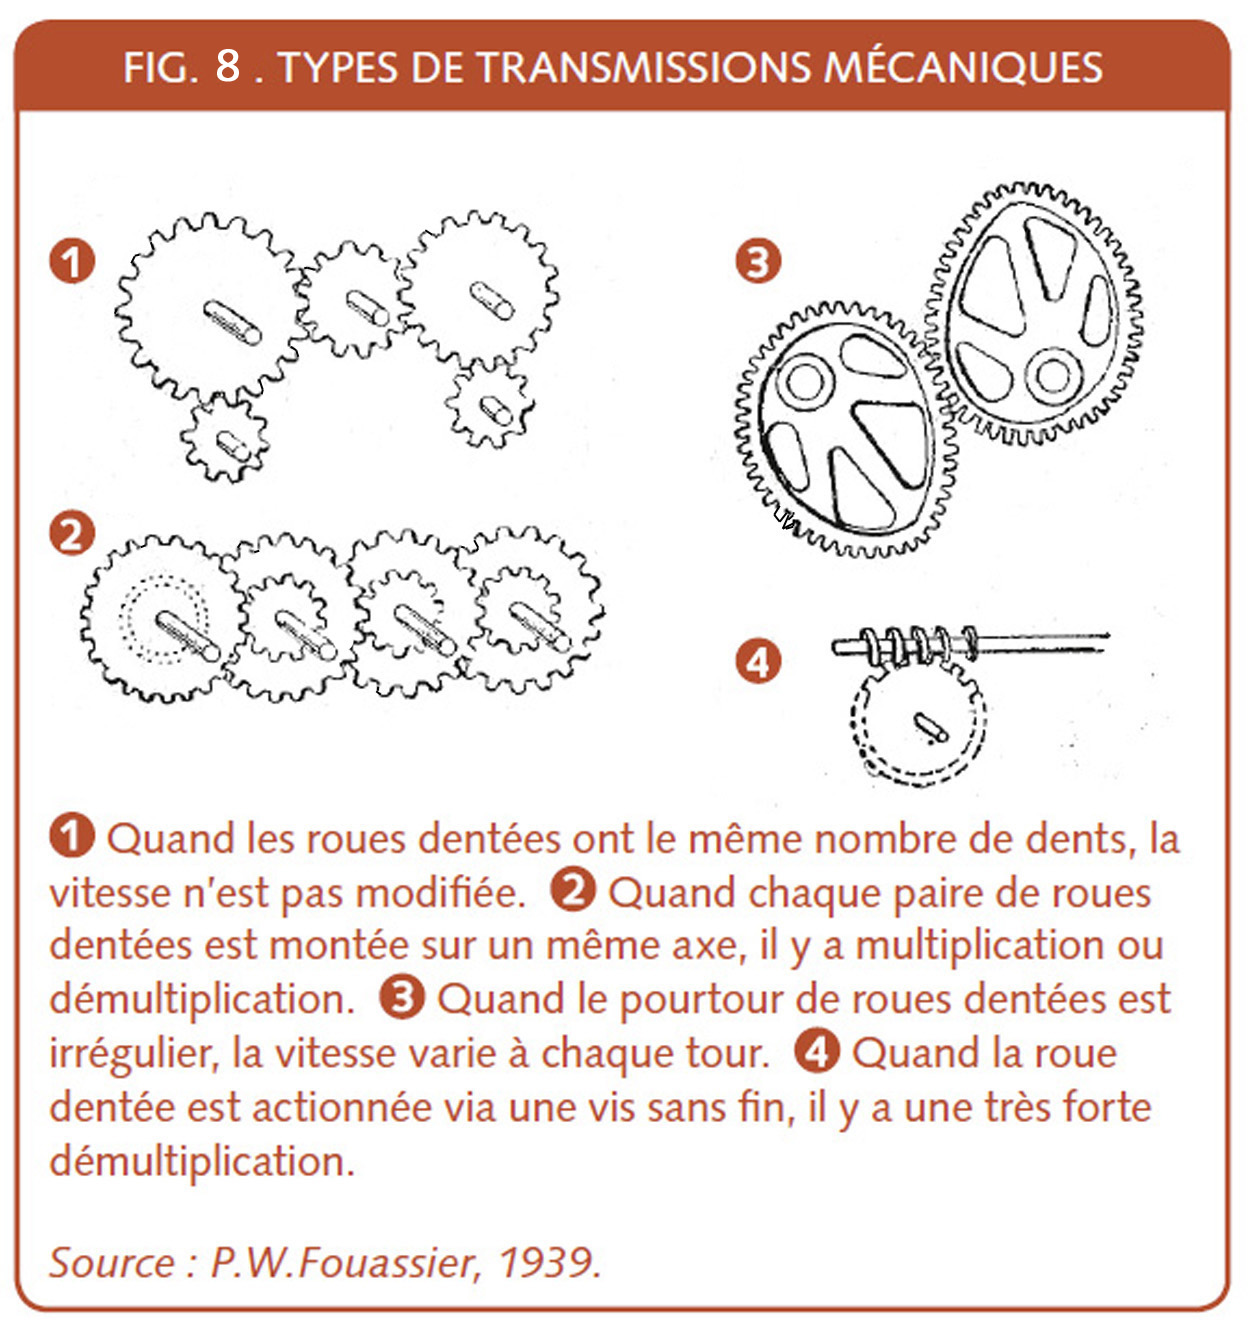 18_185_Types de transmissions mecaniques.jpg